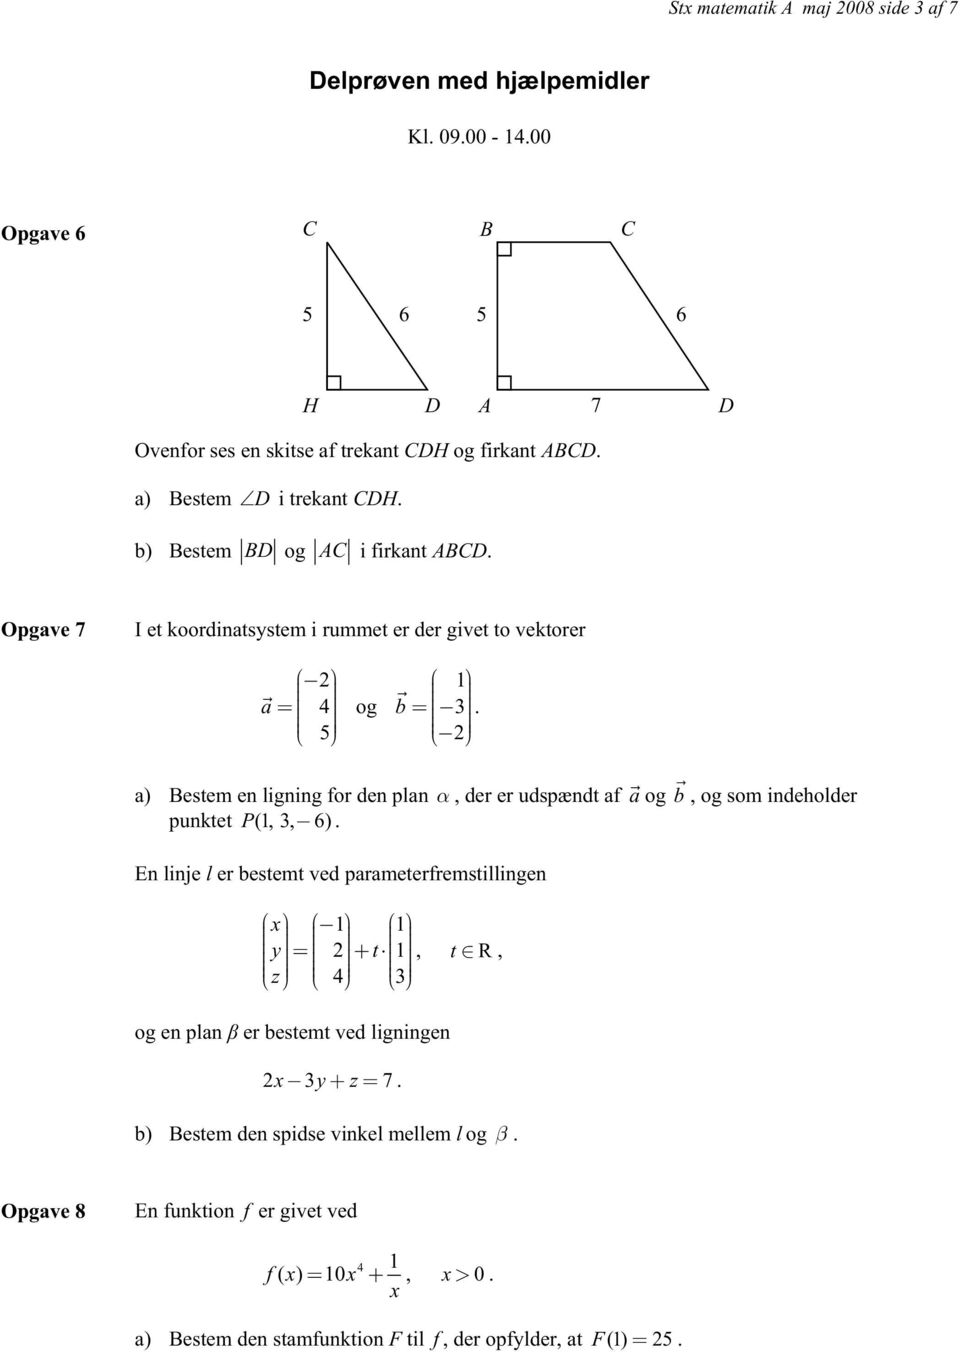 a) Bestem en ligning for den plan, der er udspændt af a og b, og som indeholder punktet P(1, 3, 6).